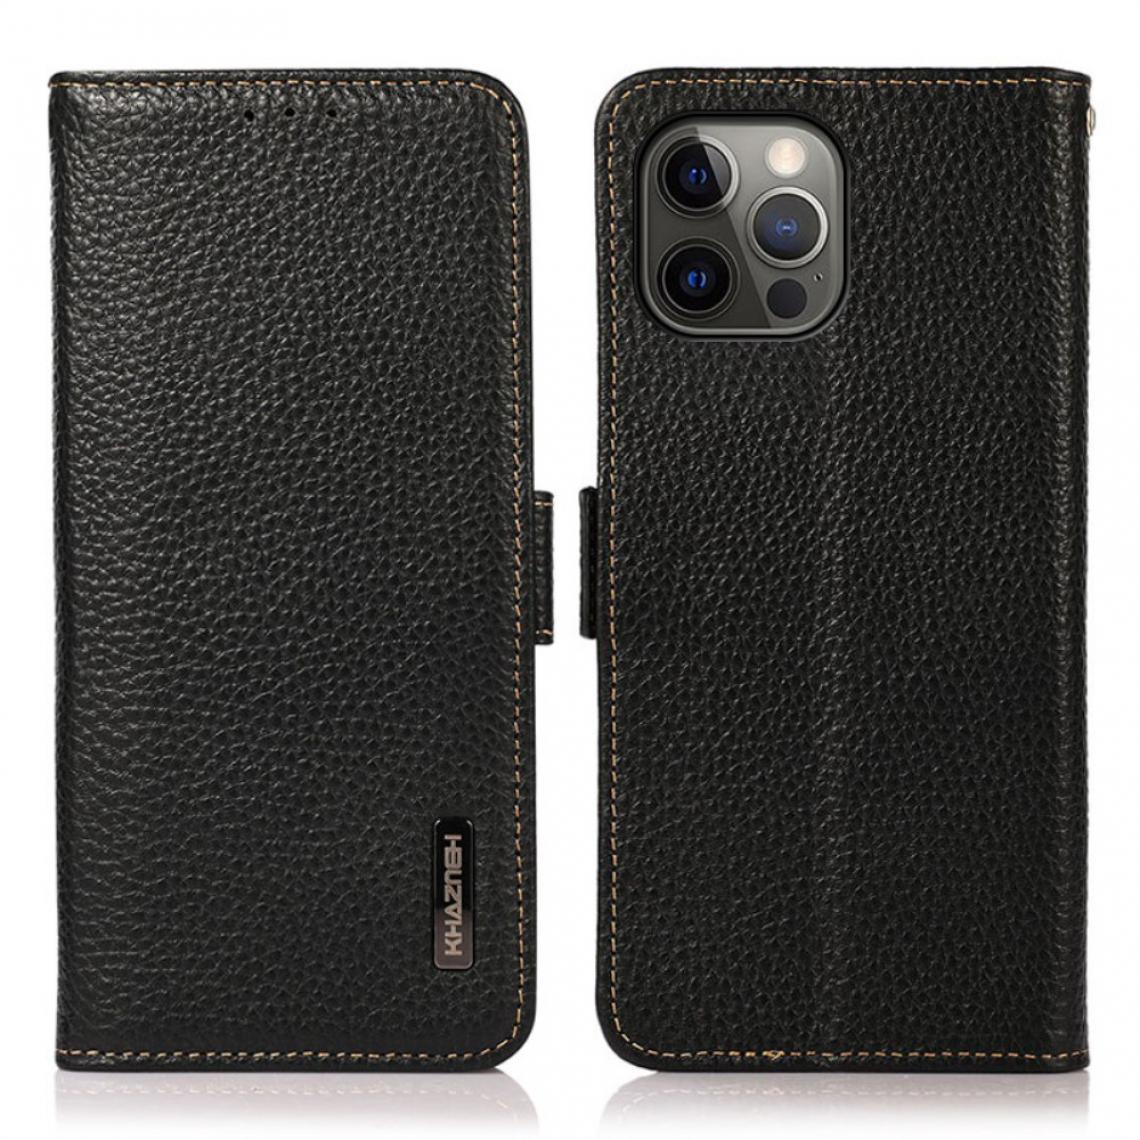 Other - Etui en cuir véritable Peau de litchi antivol bloquant RFID noir pour votre Apple iPhone 12 Pro Max - Coque, étui smartphone